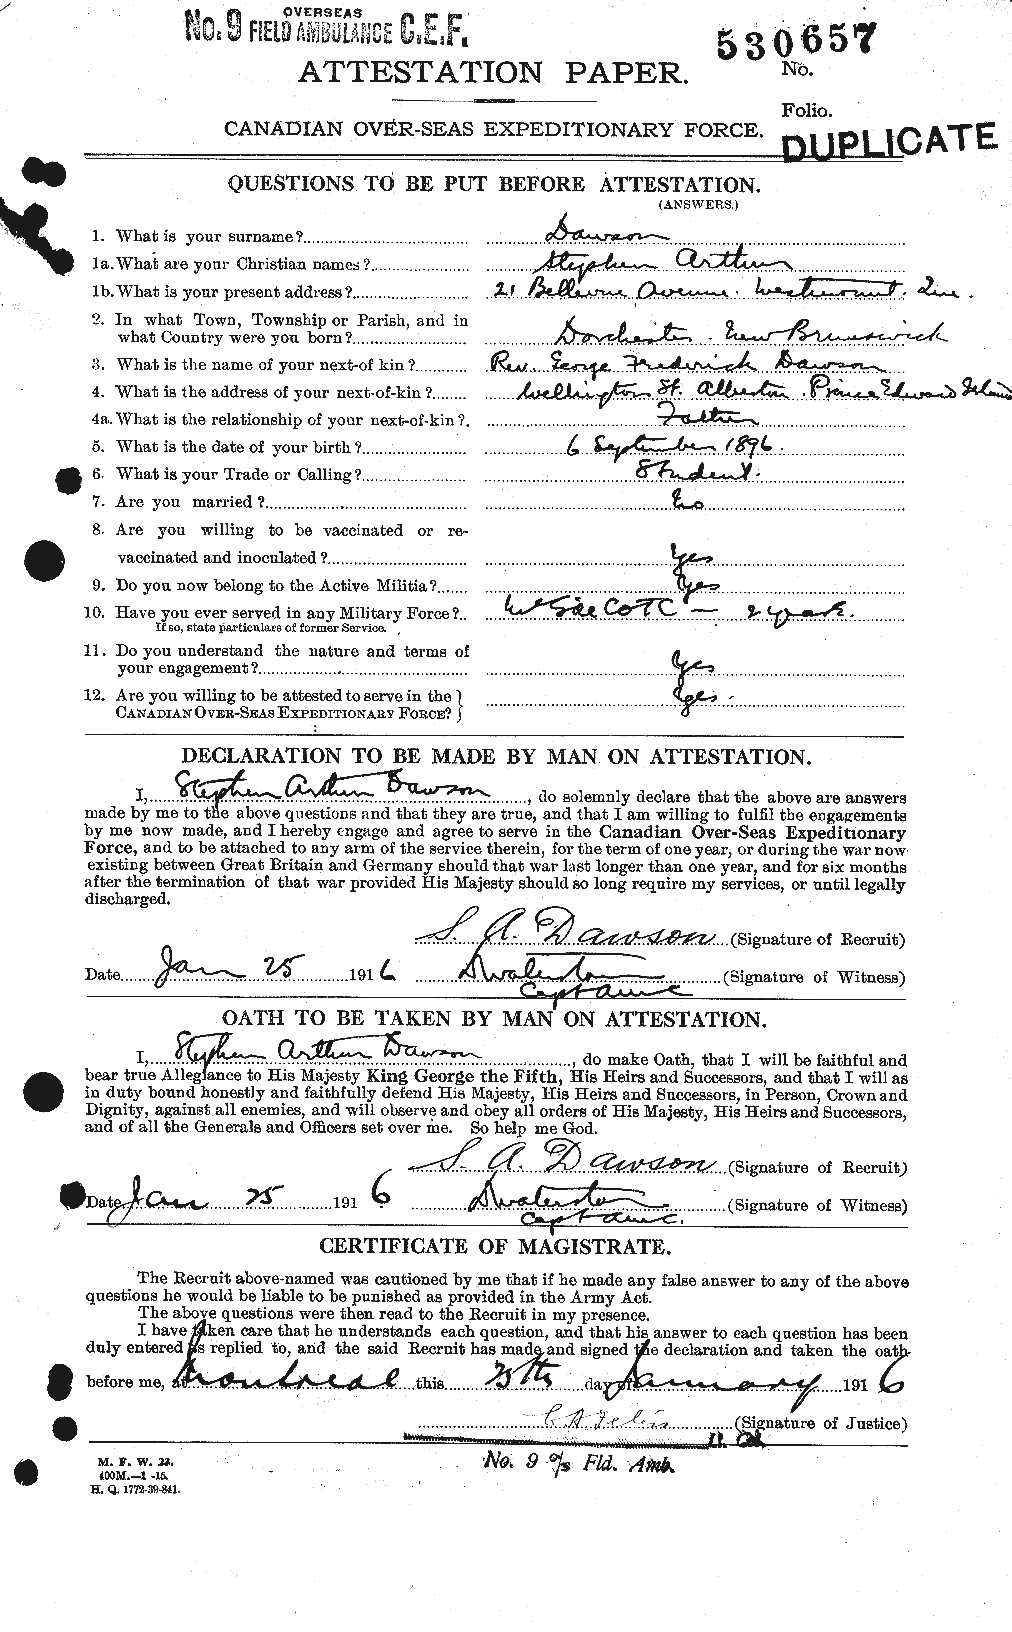 Dossiers du Personnel de la Première Guerre mondiale - CEC 282821a